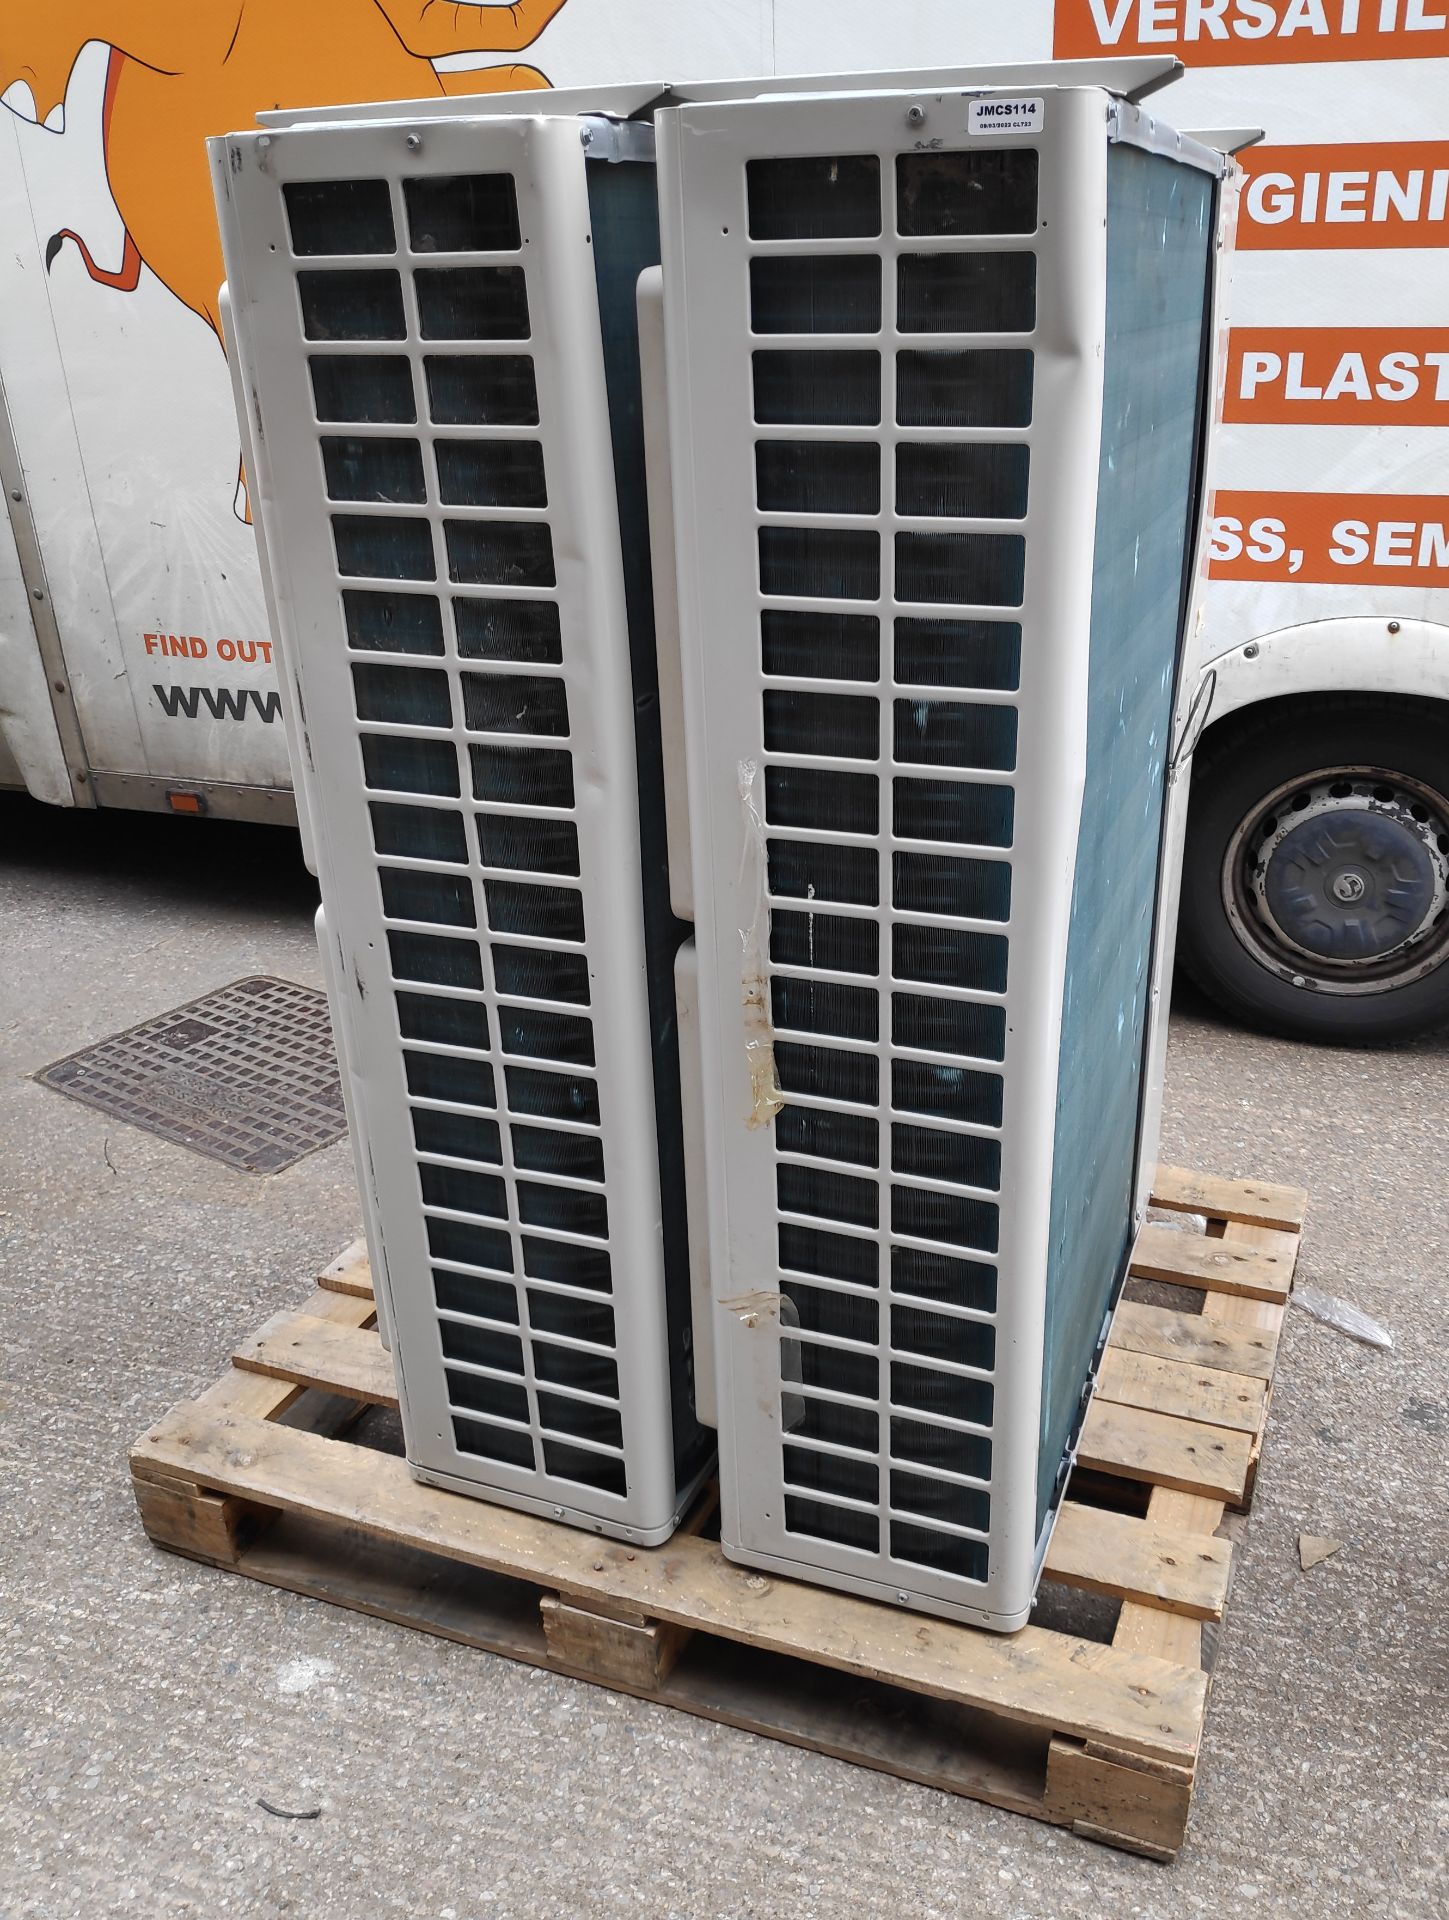 2 x Daikin VRV IV S-Series Air Conditioner Inverter Heat Pumps - Model: RXYSQ5T7V1B - JMCS114 - - Image 2 of 10